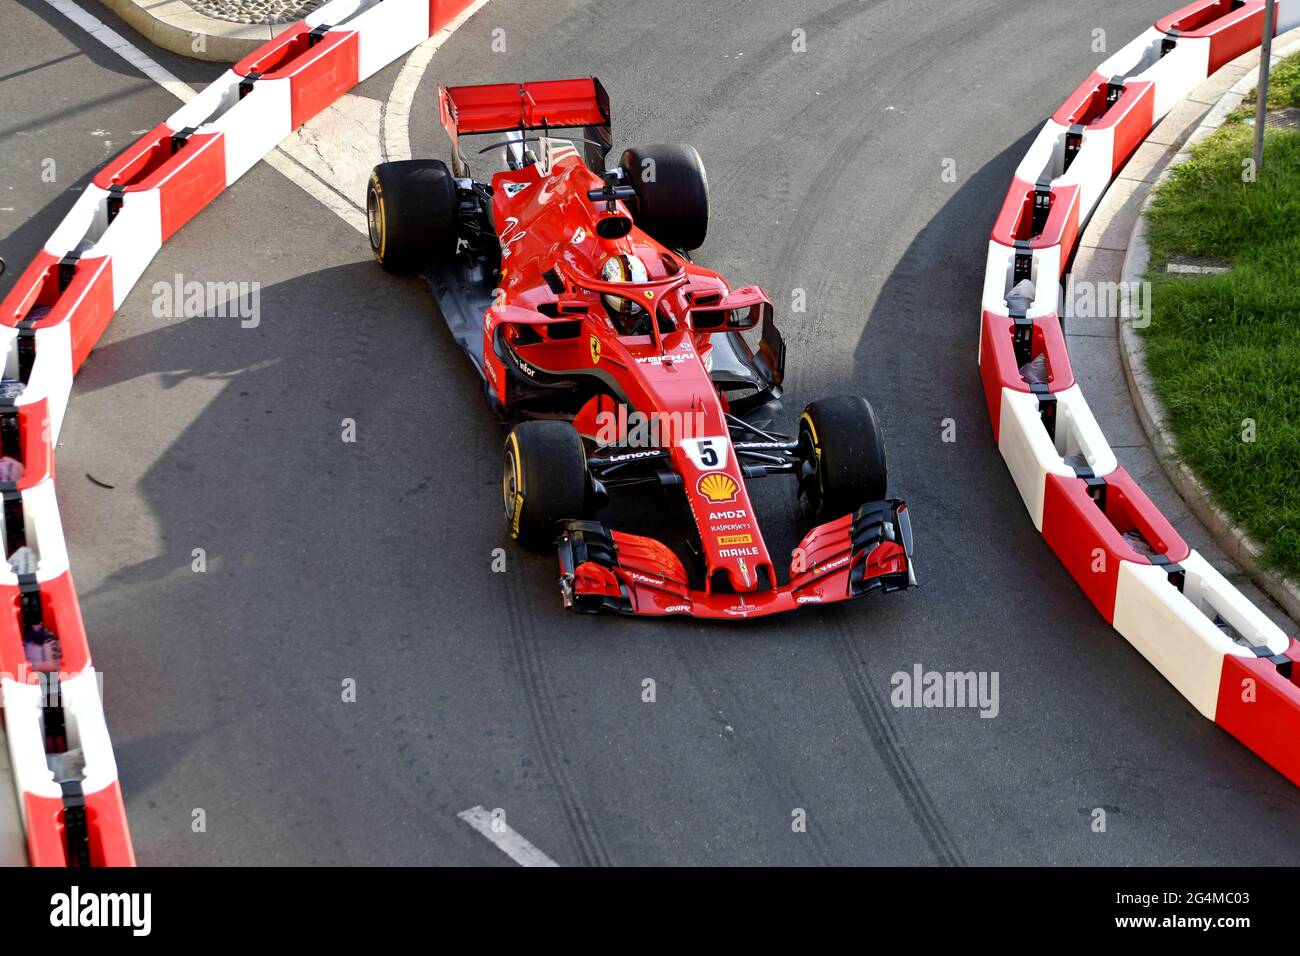 Vue de haut de la Formule 1 de Ferrari sur le circuit de la ville, pendant le Festival de F1 de Milan, 2018, à Milan. Banque D'Images